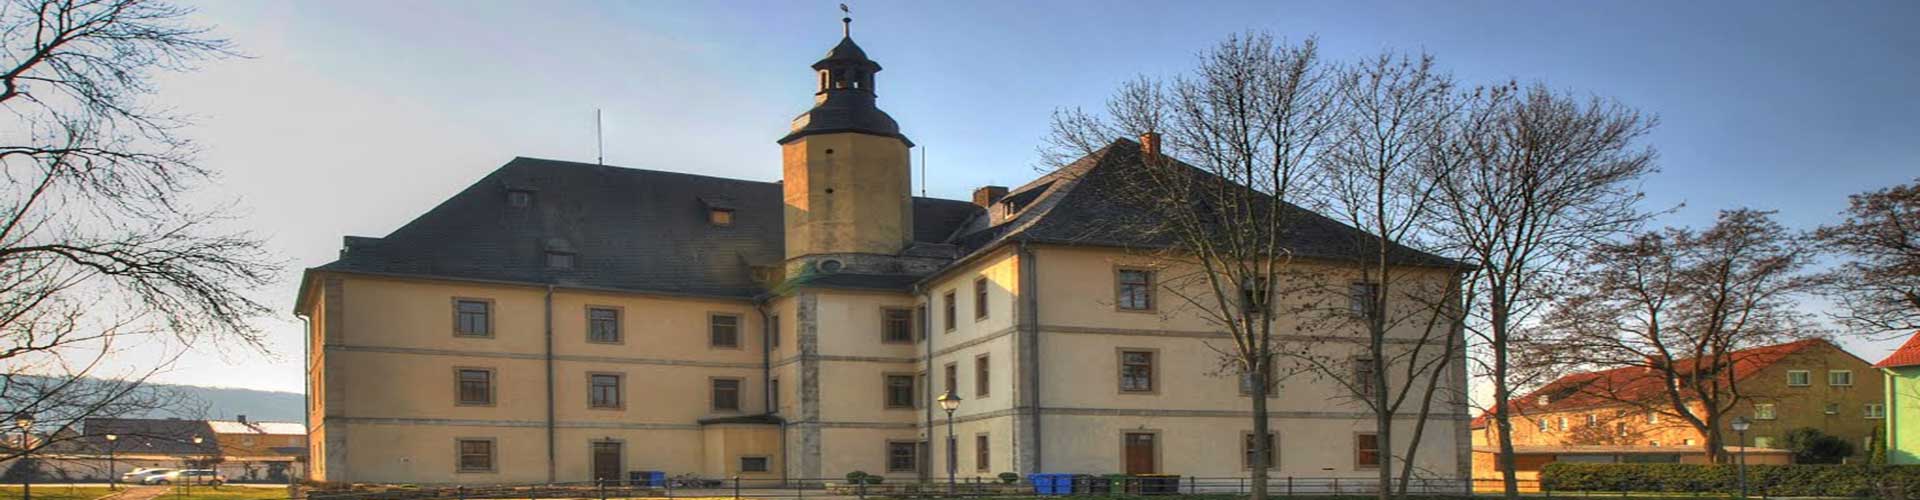 Übernachtung im Schloss Balgstädt - Ferienwohnung